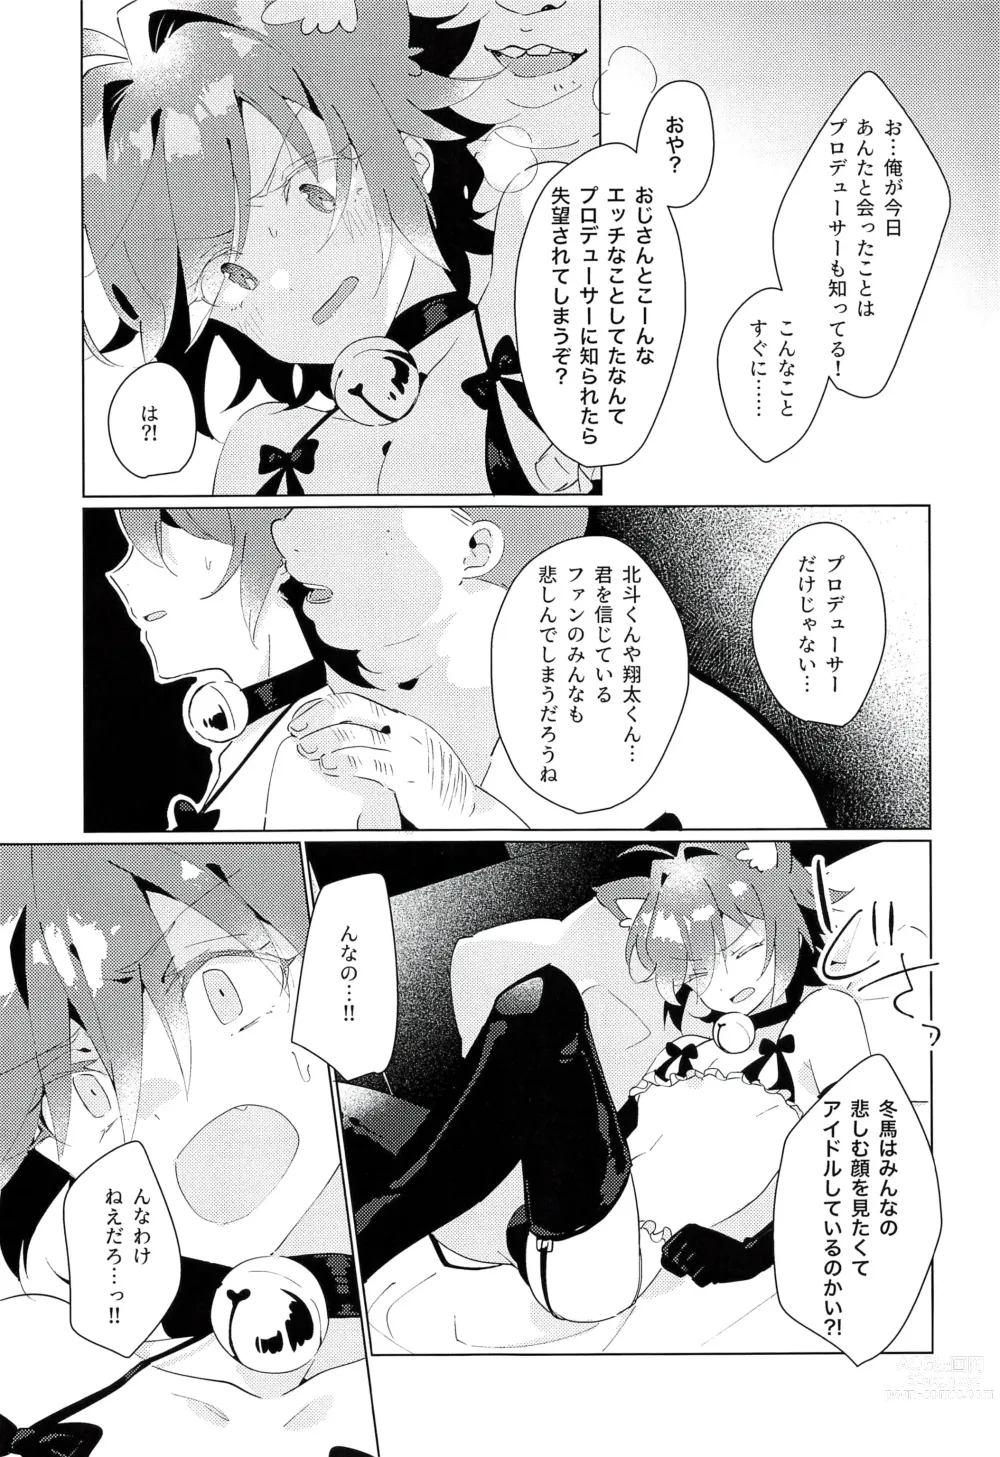 Page 13 of doujinshi naive.